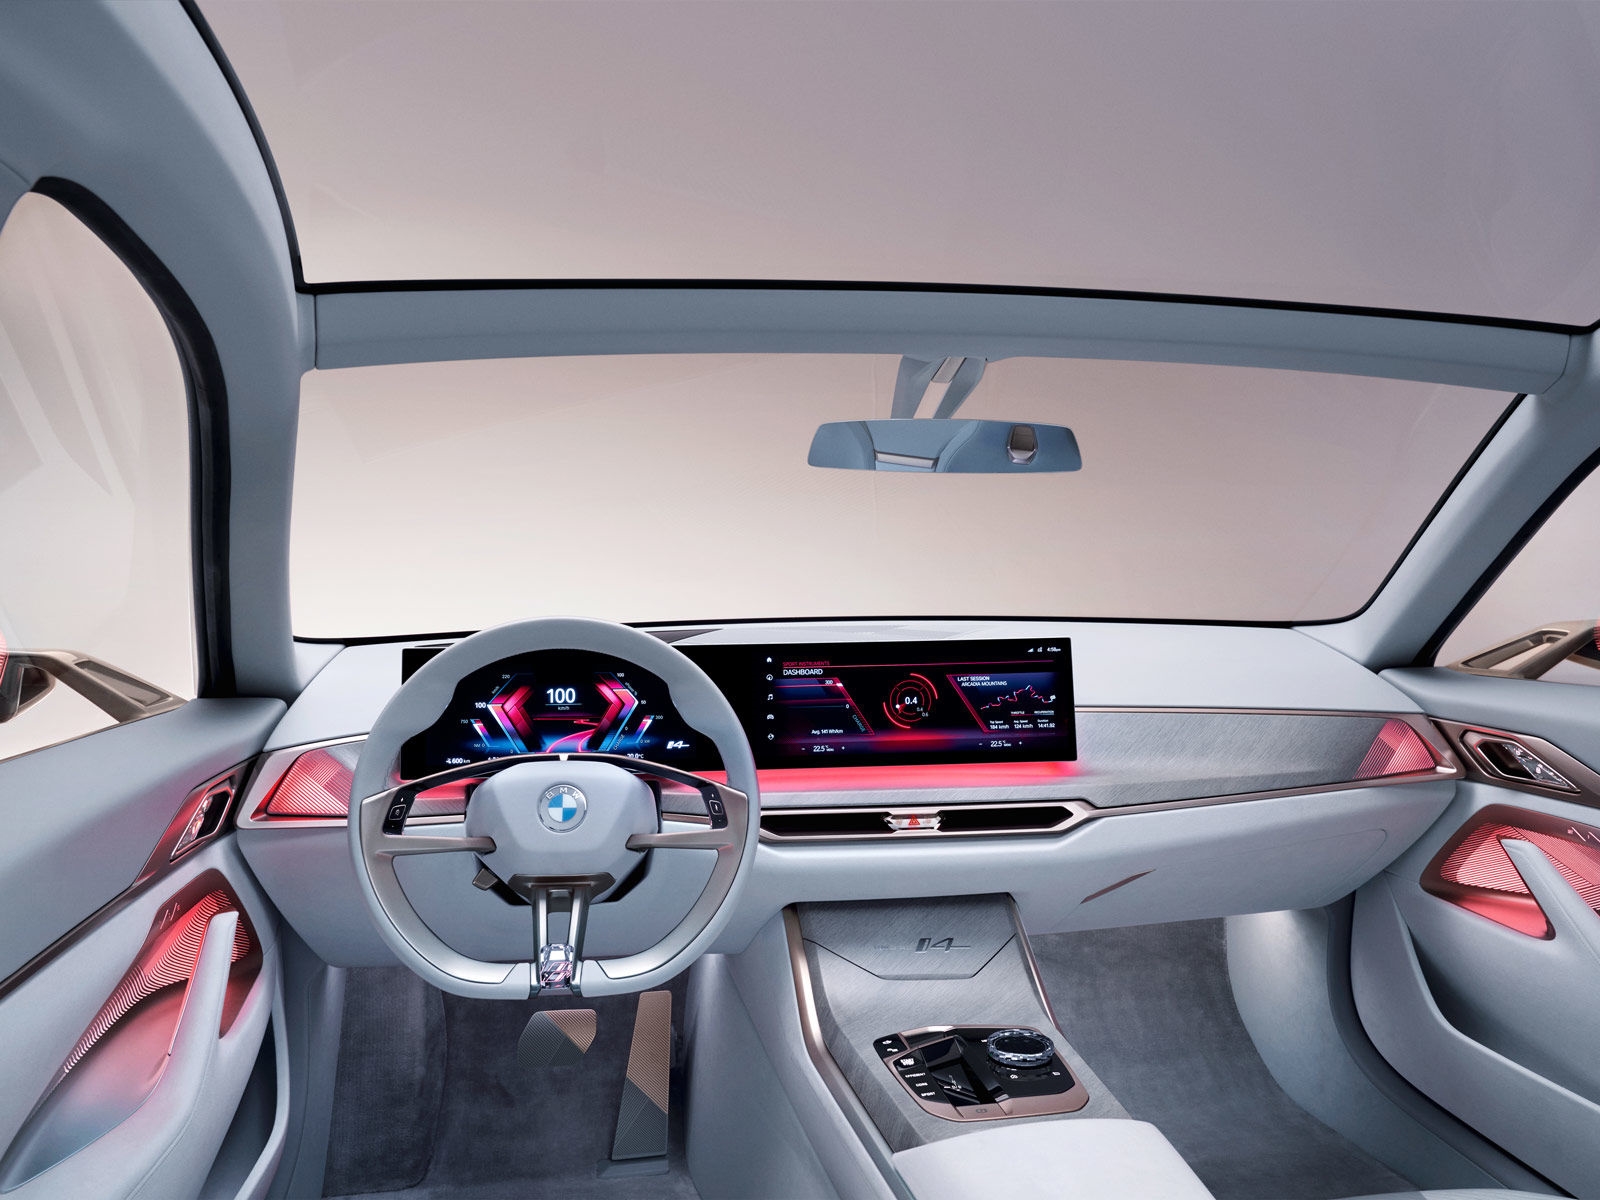 BMW teases upcoming i4 EV with a futuristic concept car | DeviceDaily.com